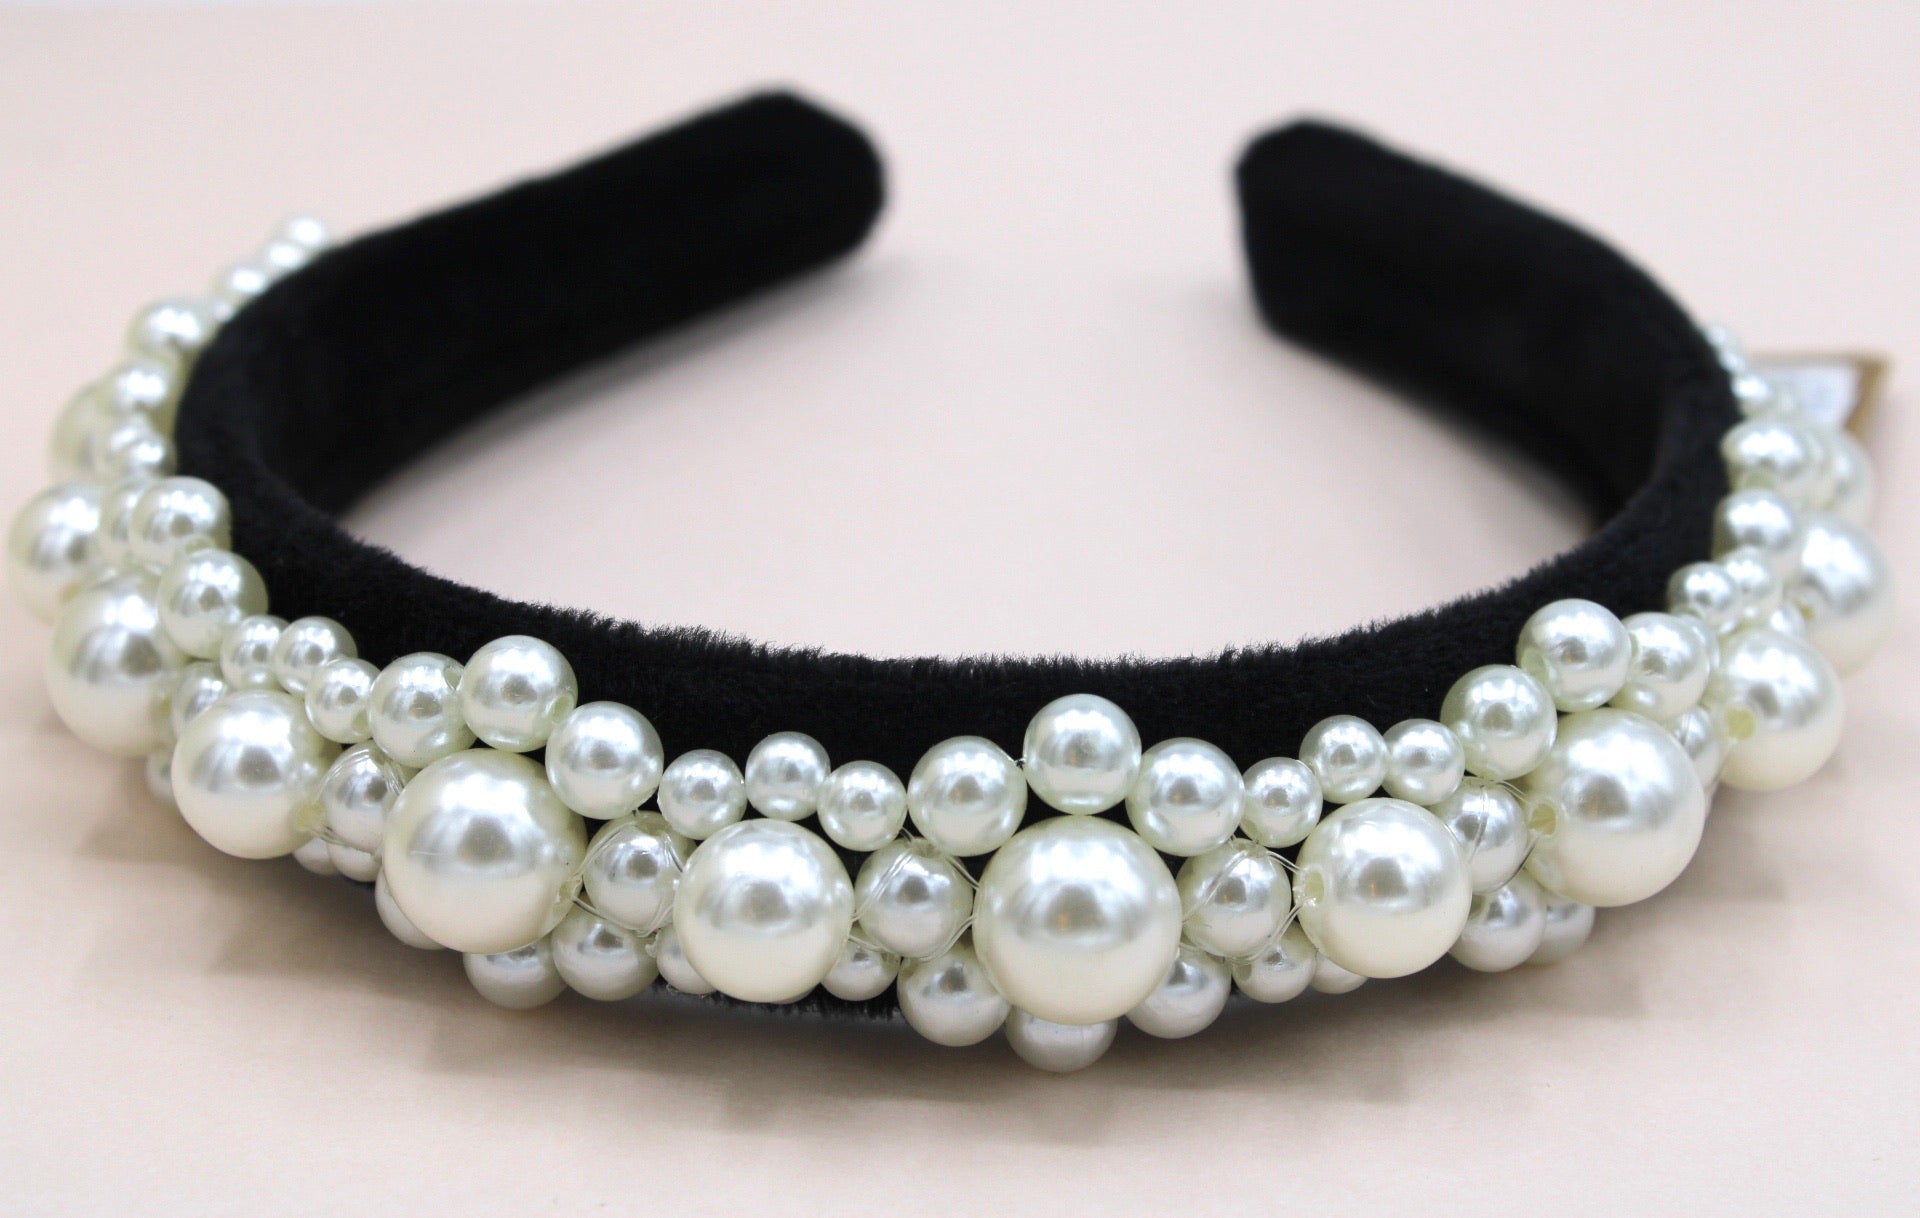 Furry pearl headband - Monique Fashion Accessories